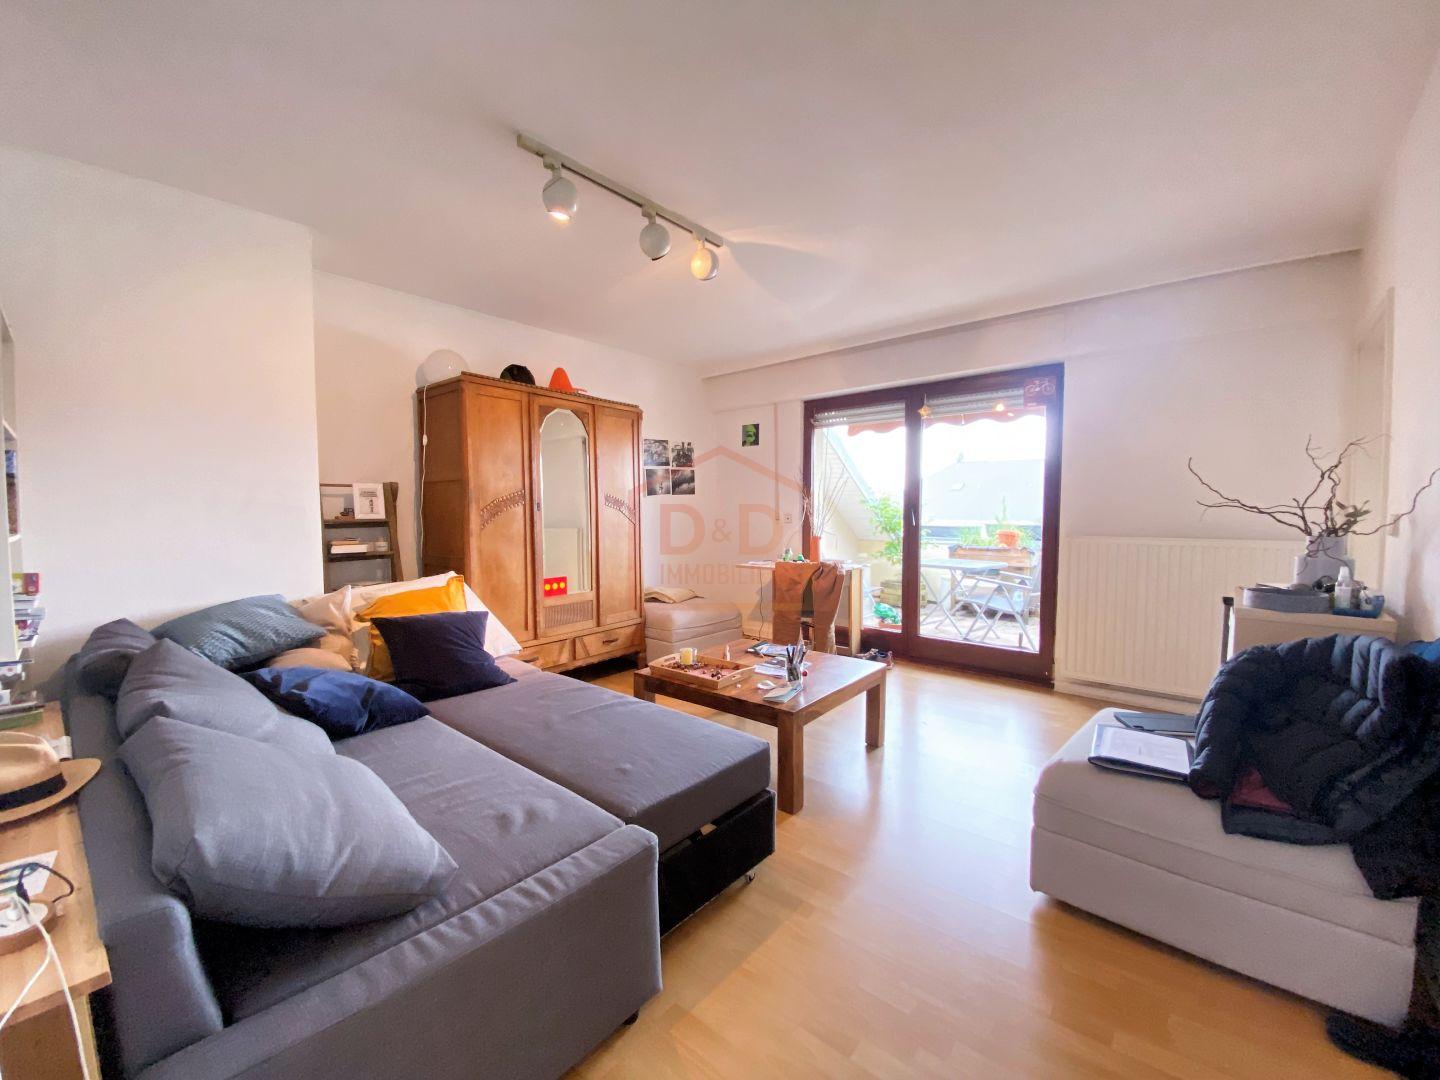 Appartement à Howald, 67 m², 1 chambre, 1 salle de bain, 1 500 €/mois